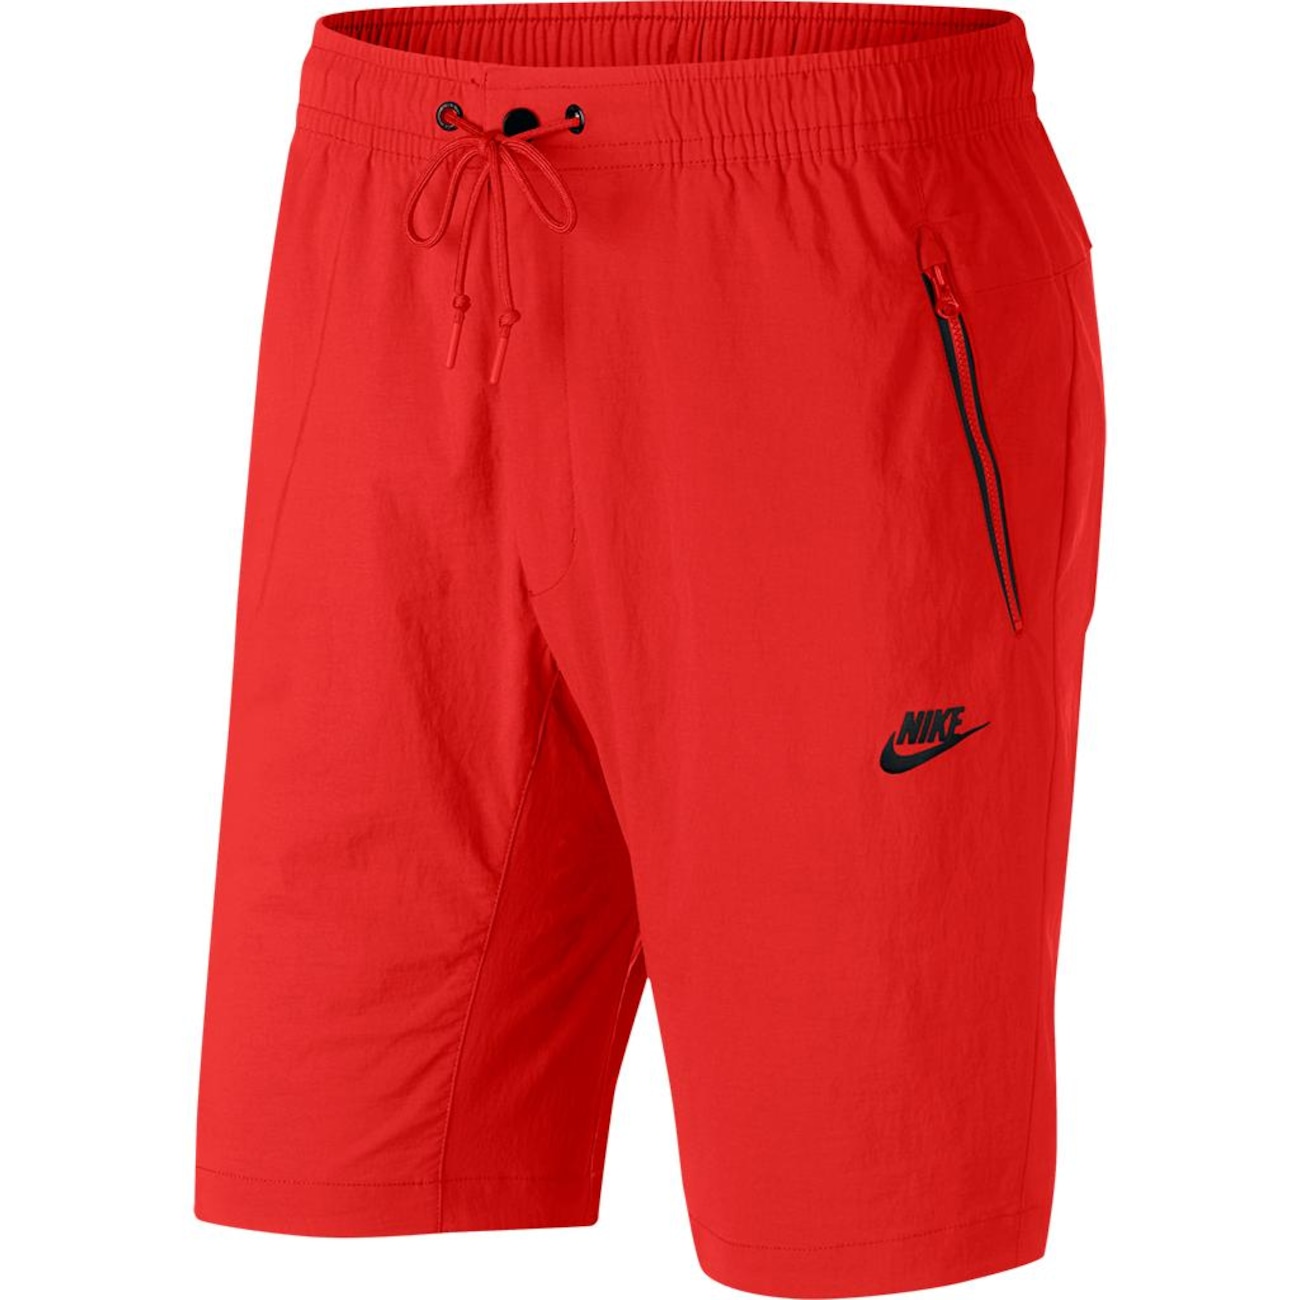 Shorts Nike Sportswear Woven Street Masculino - Foto 1